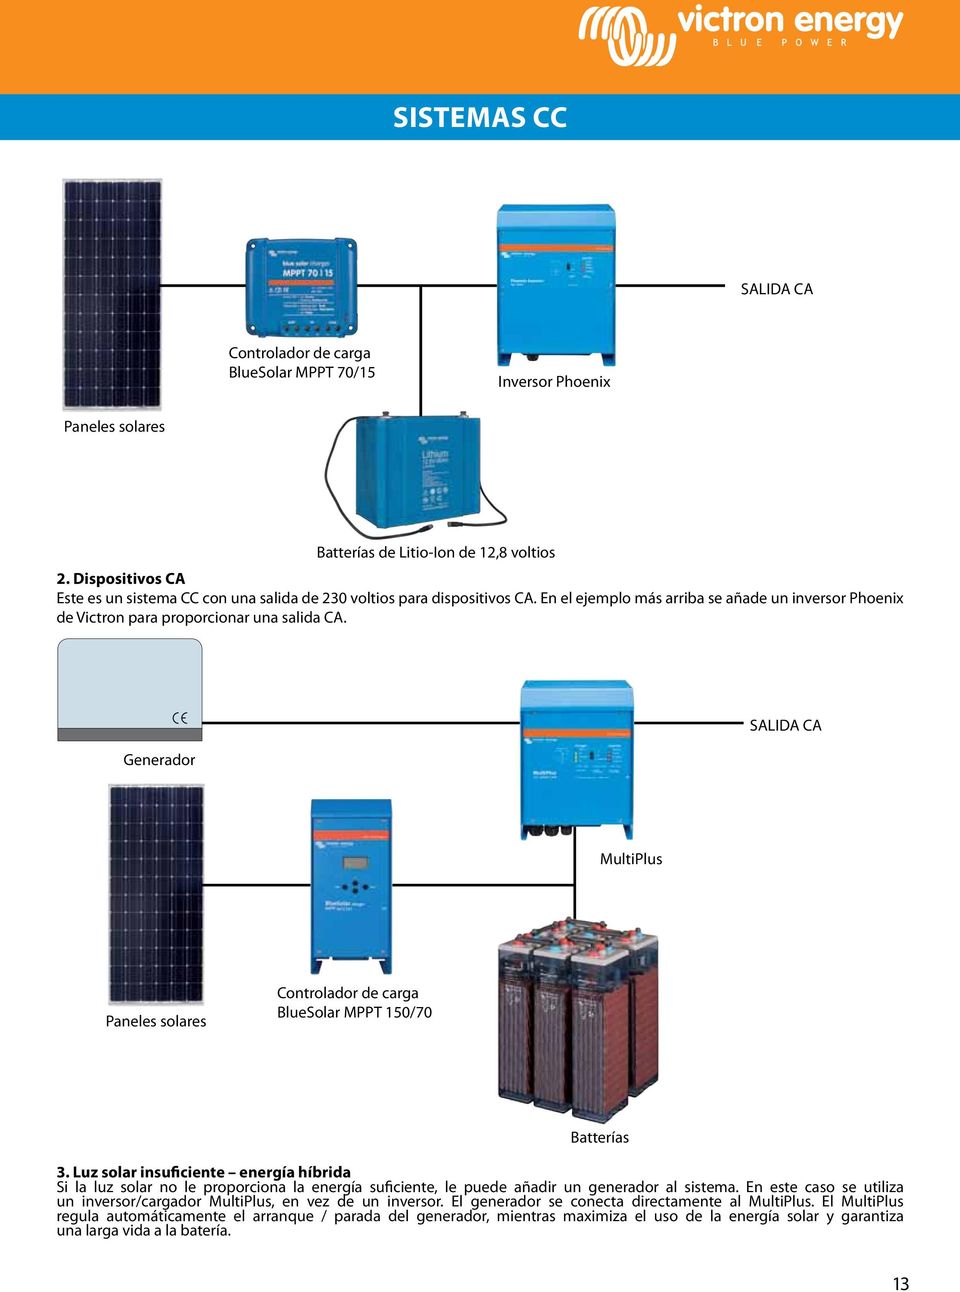 Generador SALIDA CA MultiPlus Paneles solares Controlador de carga BlueSolar MPPT 150/70 Batterías 3.